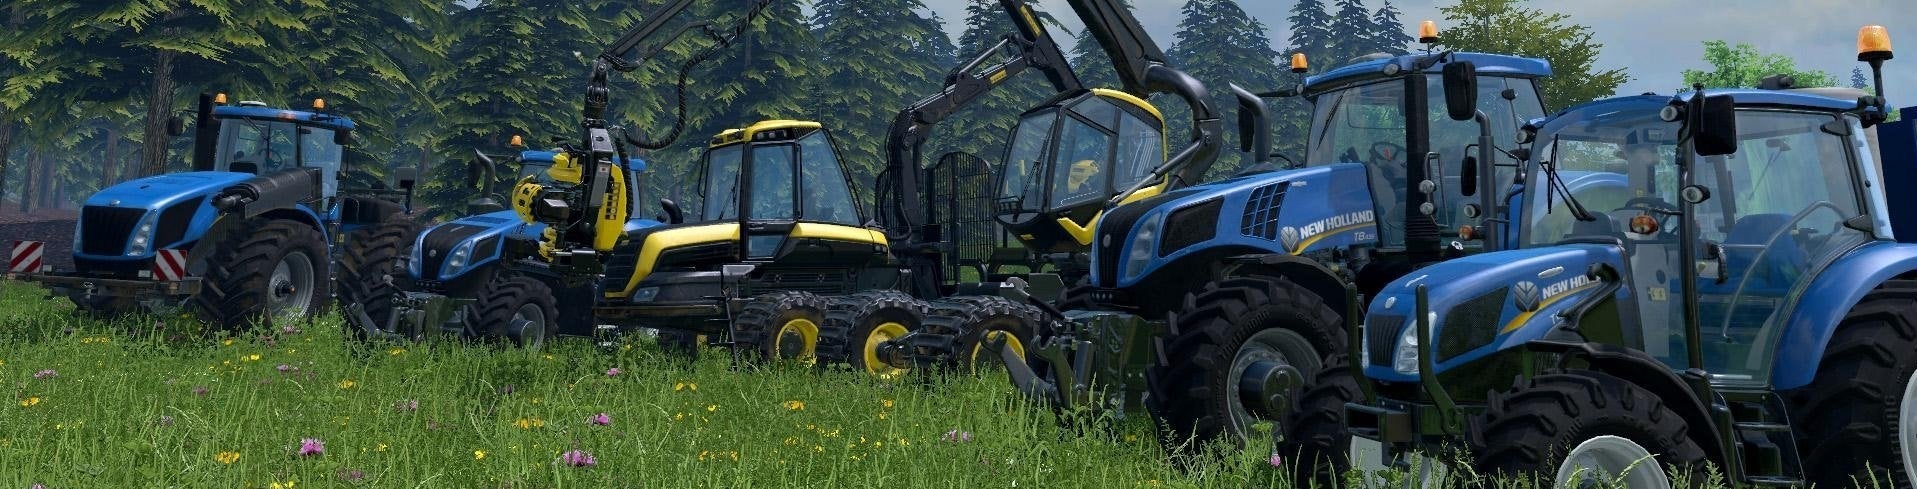 Immagine di Farming Simulator 15 - recensione